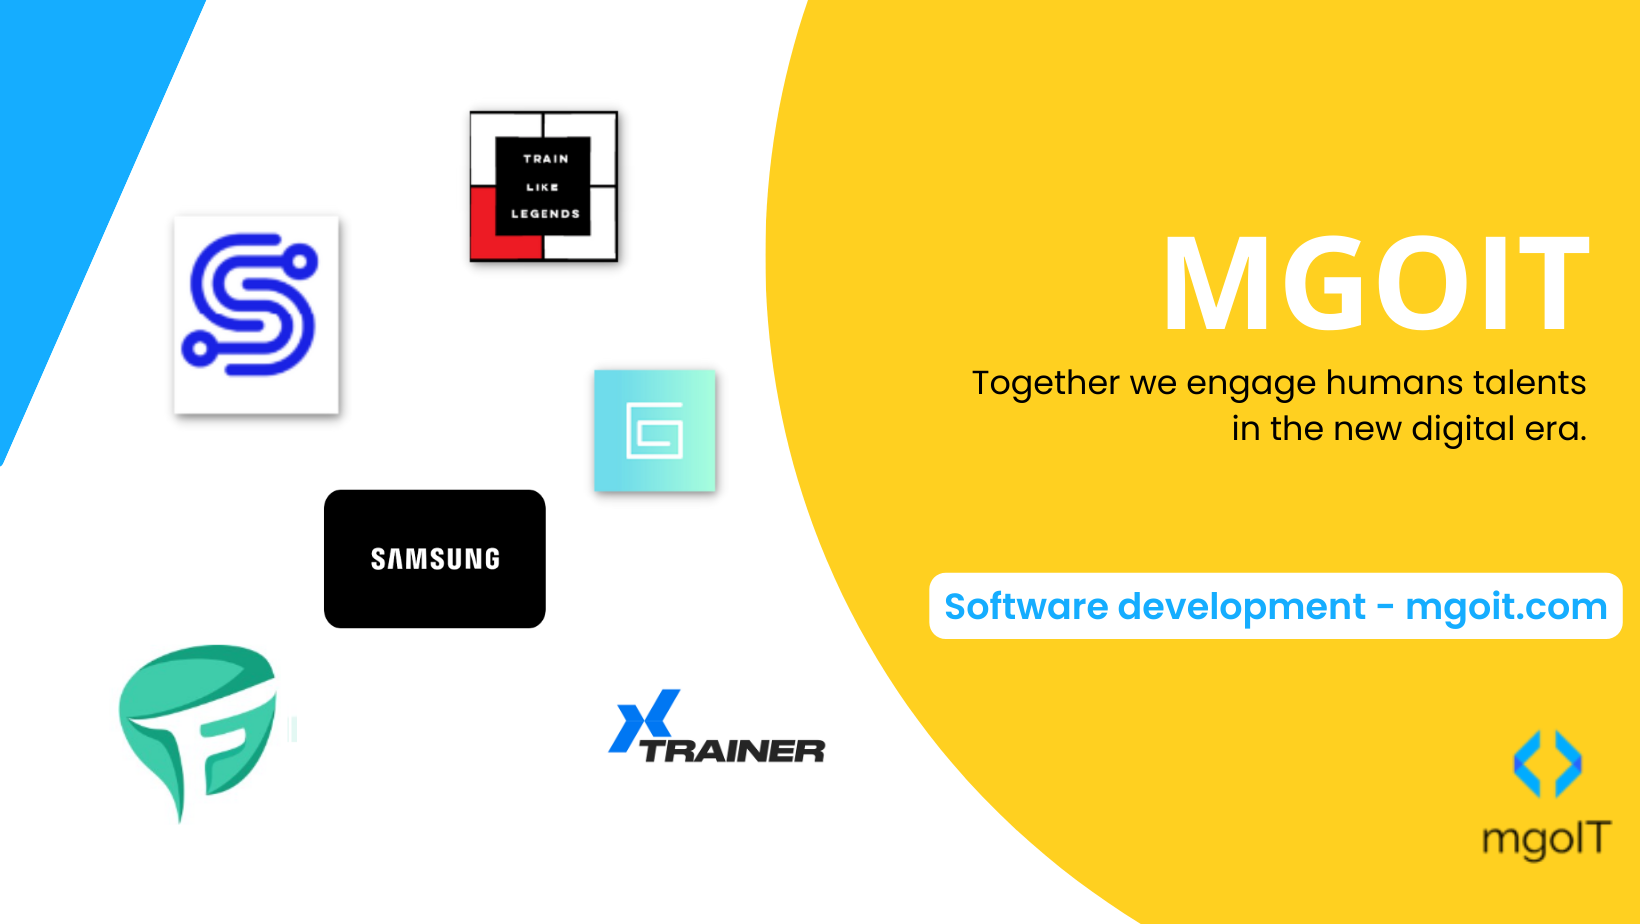 Software development - mgoit.com (2)